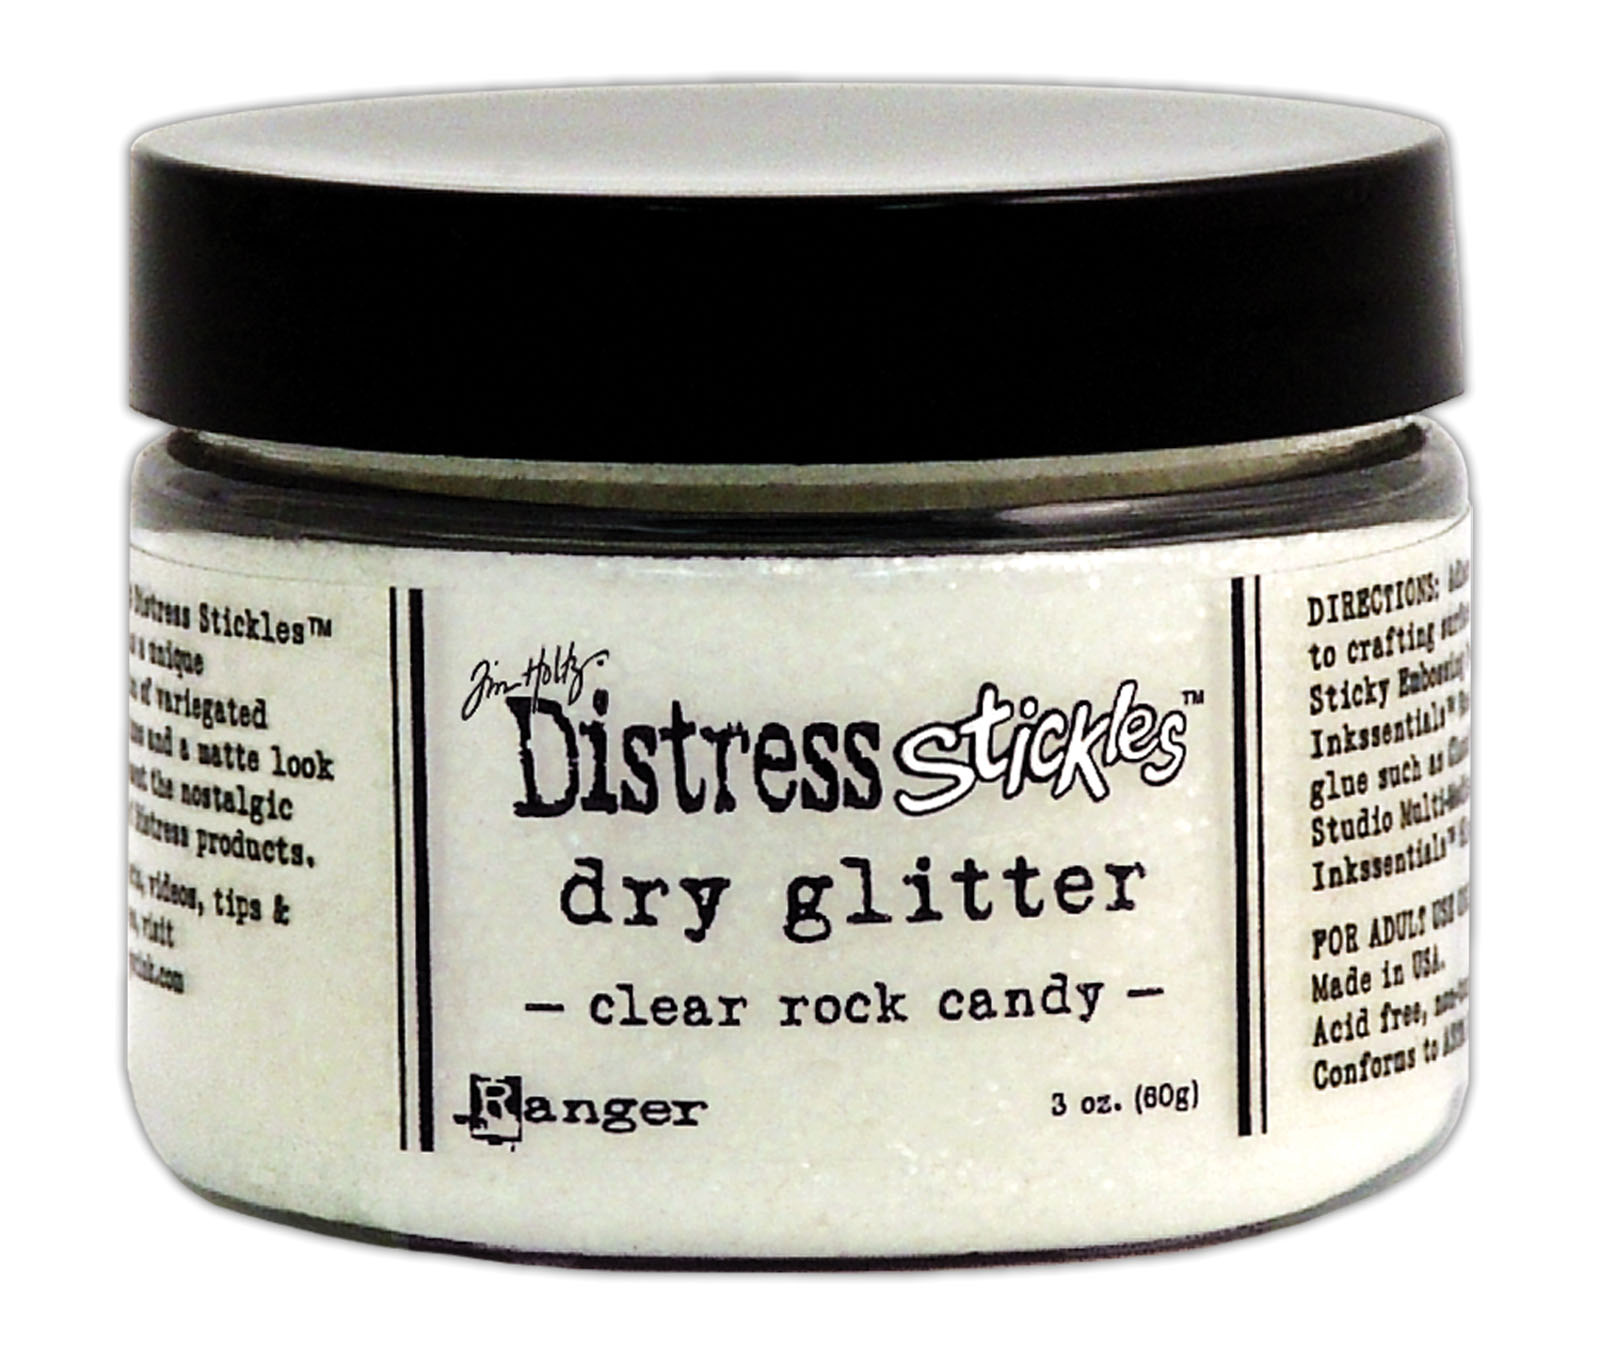 Ranger • Tim Holtz Distress stickles dry glitter Clear rock